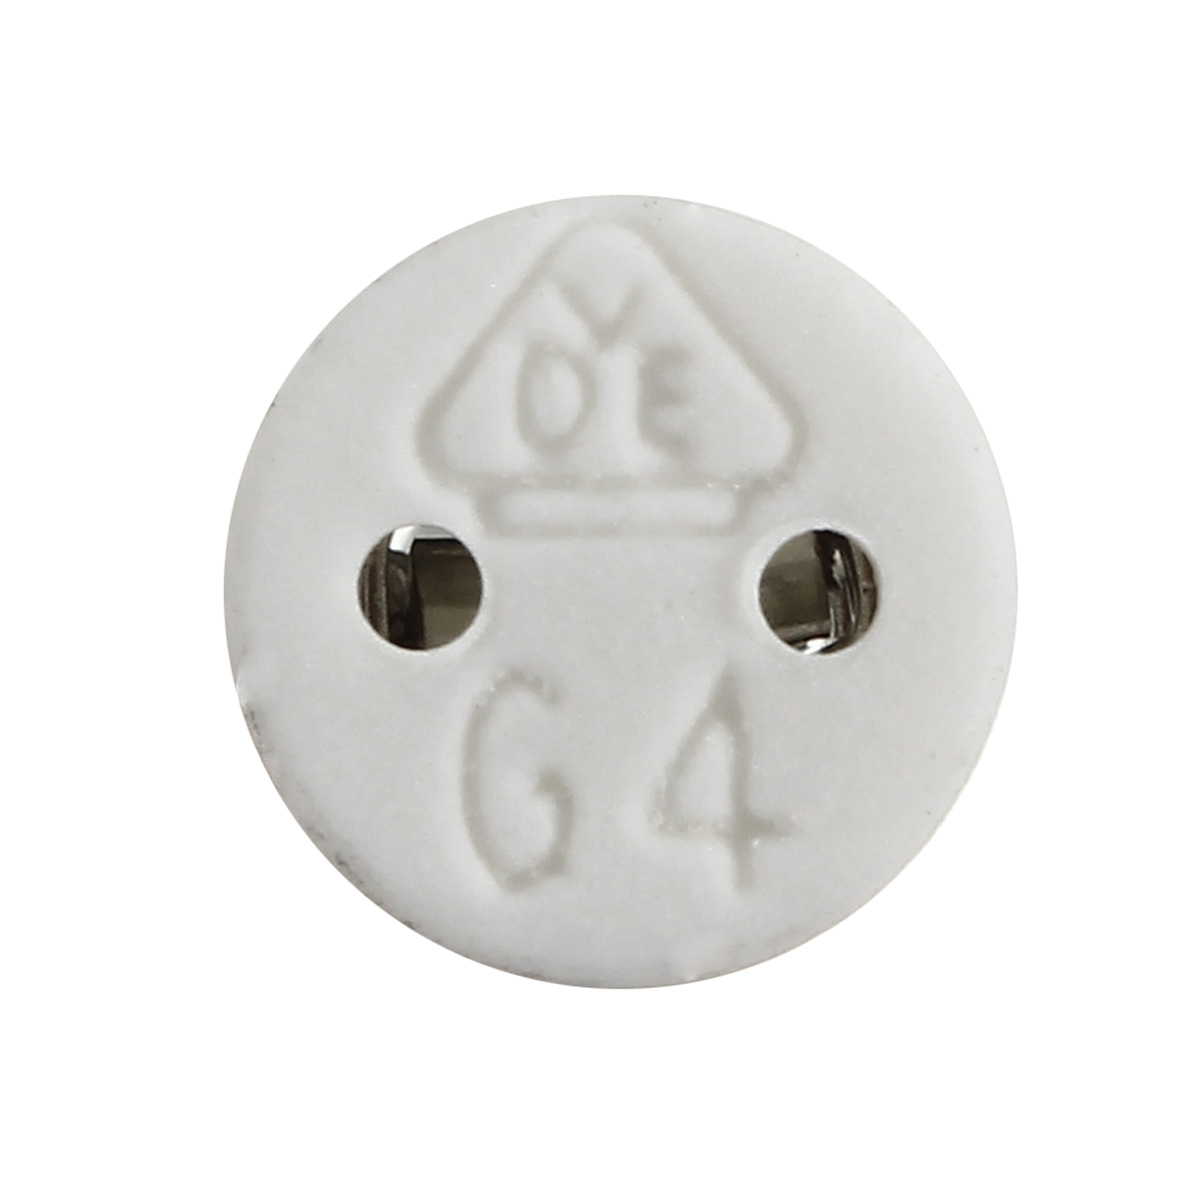 50100200cm-G4-Socket-Base-Holder-Connector-White-Ceramic-LED-Halogen-Bulb-Lamp-Light-1121380-3